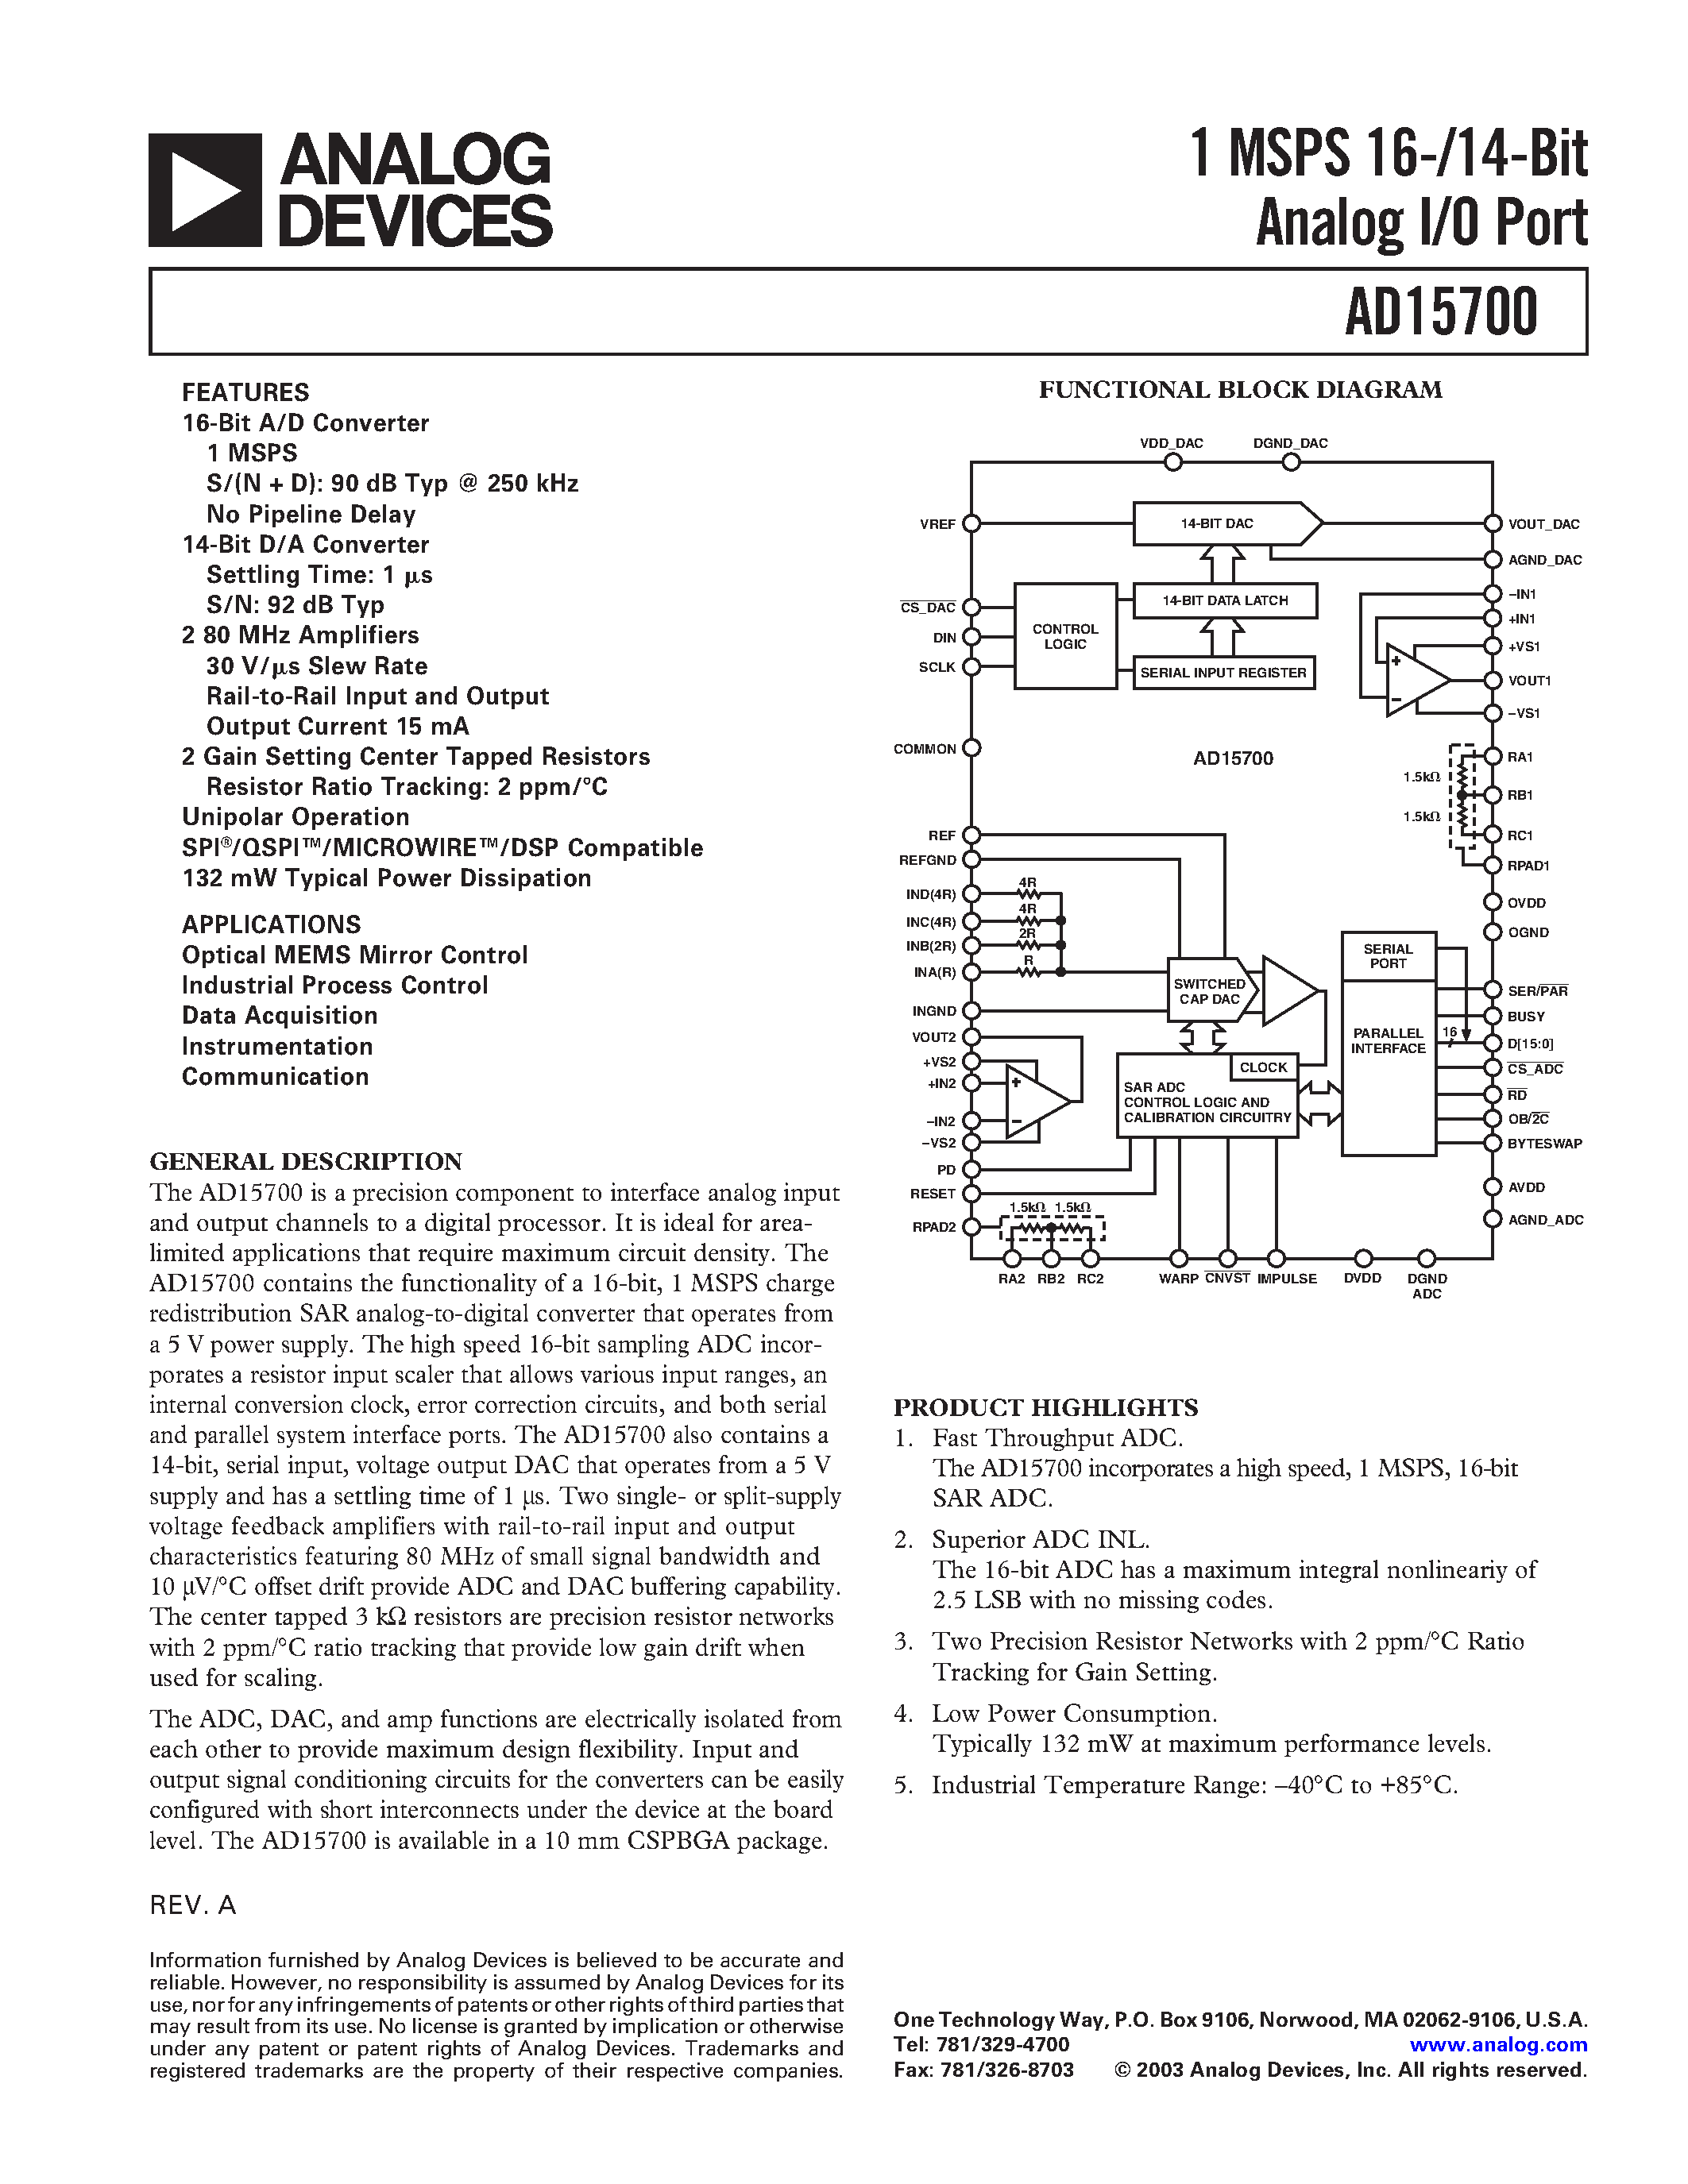 Datasheet AD15700/PCB - 1 MSPS 16-/14-Bit Analog I/O Port page 1